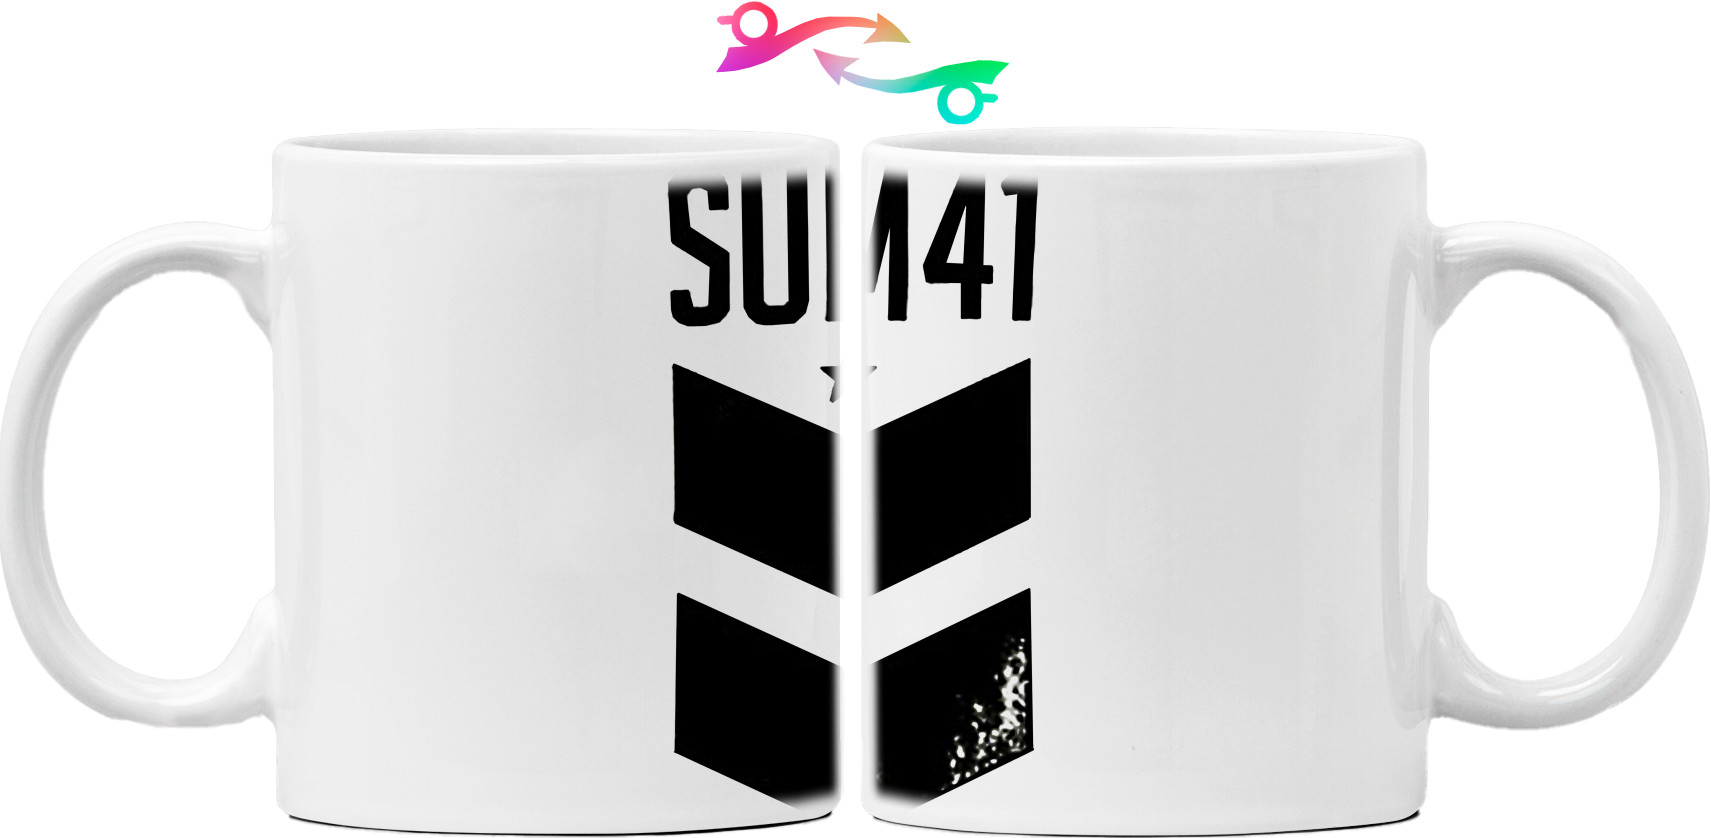 SUM 41 -9